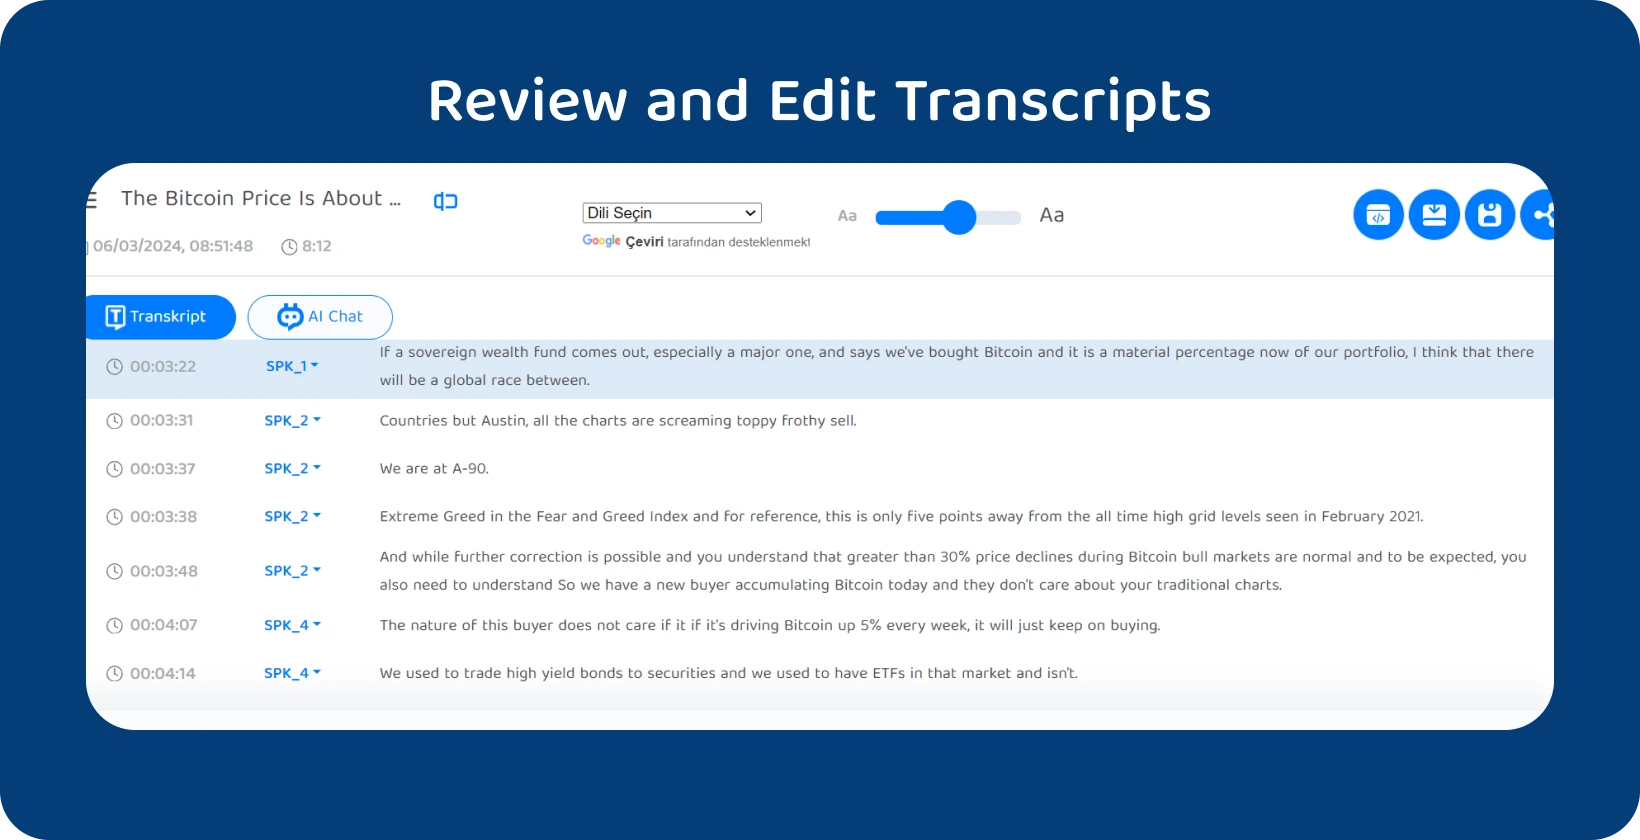 Скріншот панелі редагування Transkriptor з функціями очищення та виправлення стенограм інтерв'ю.